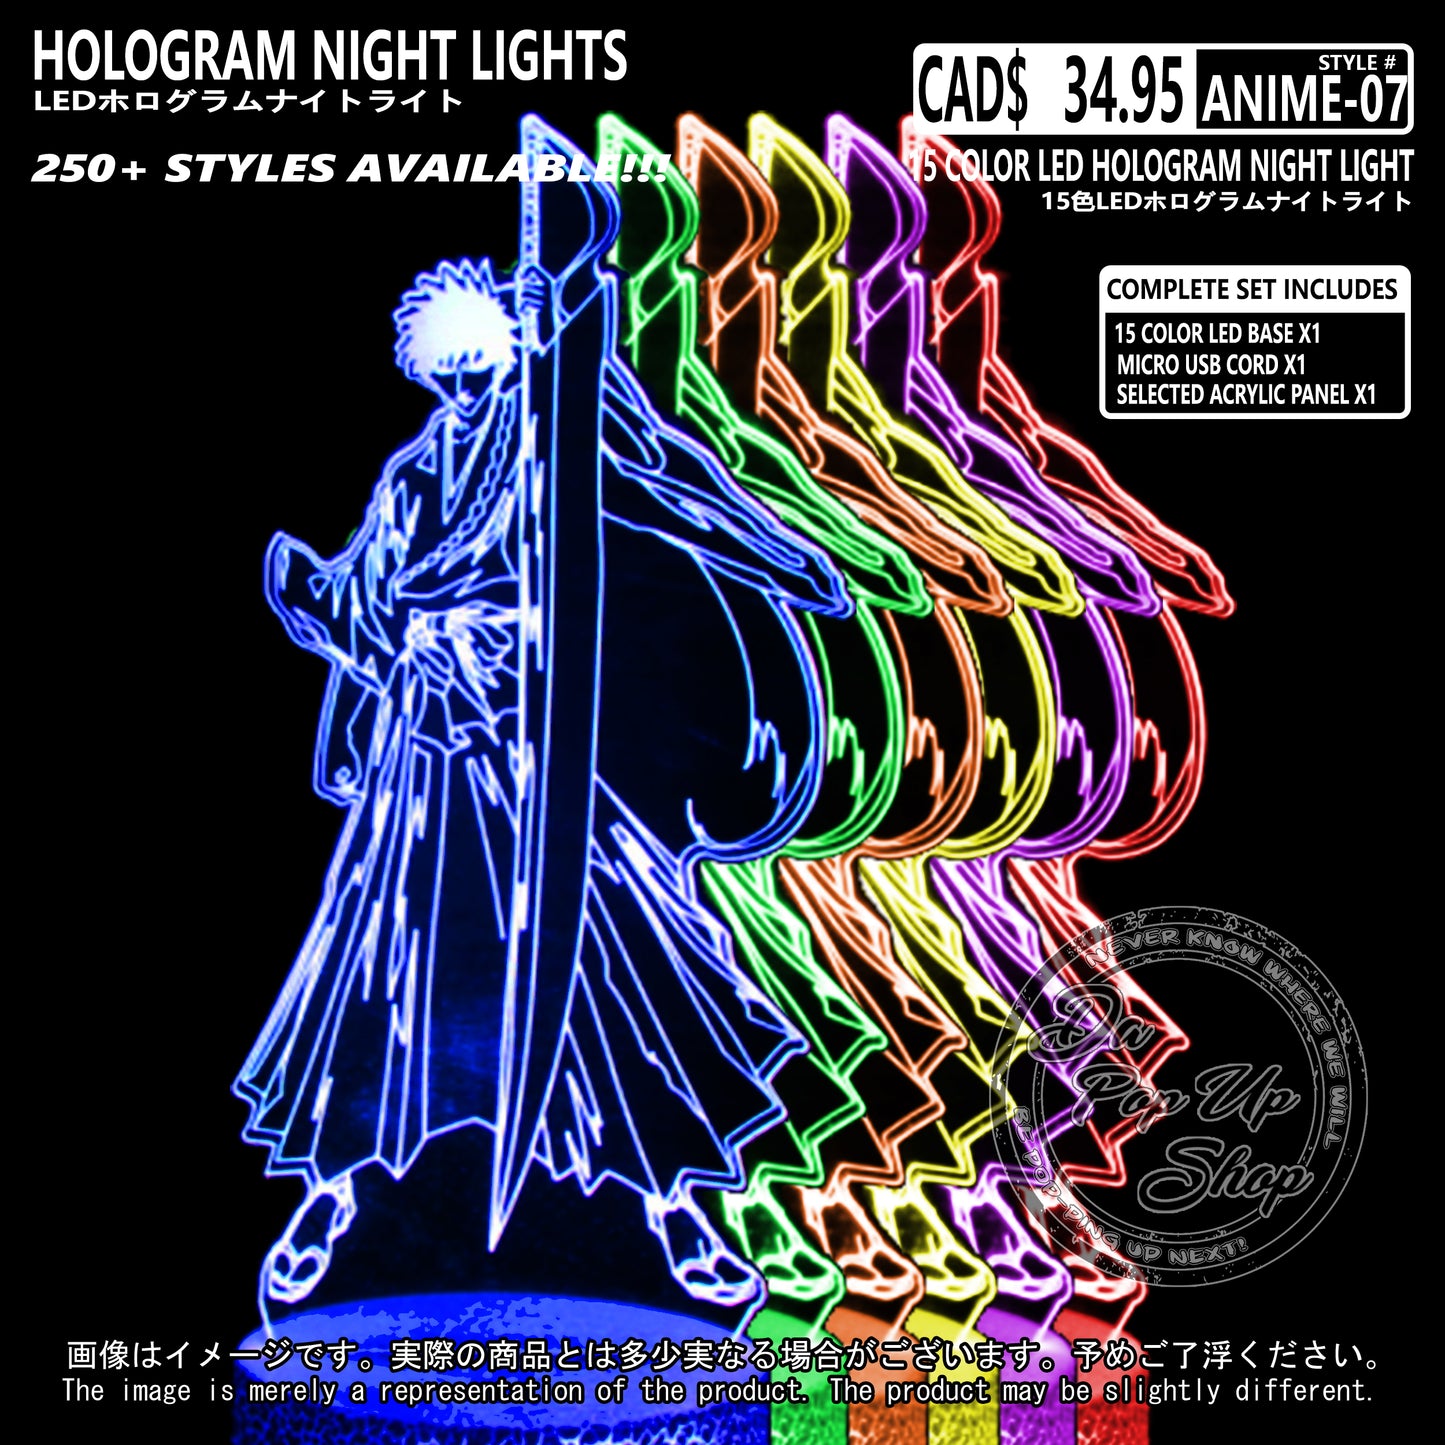 (ANIME-07) Bleach Hologram LED Night Light